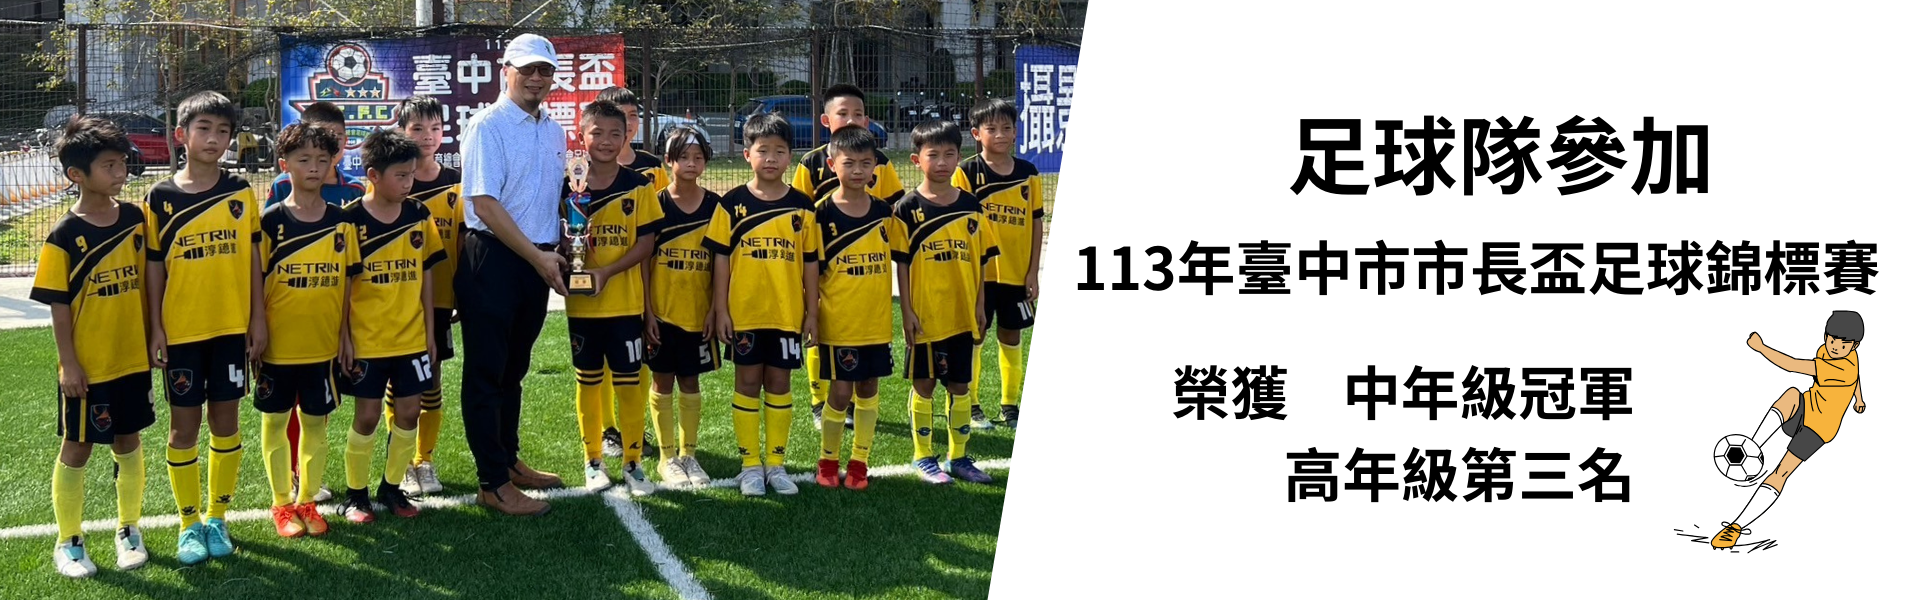 足球隊參加113年臺中市市長盃足球錦標賽榮獲佳績